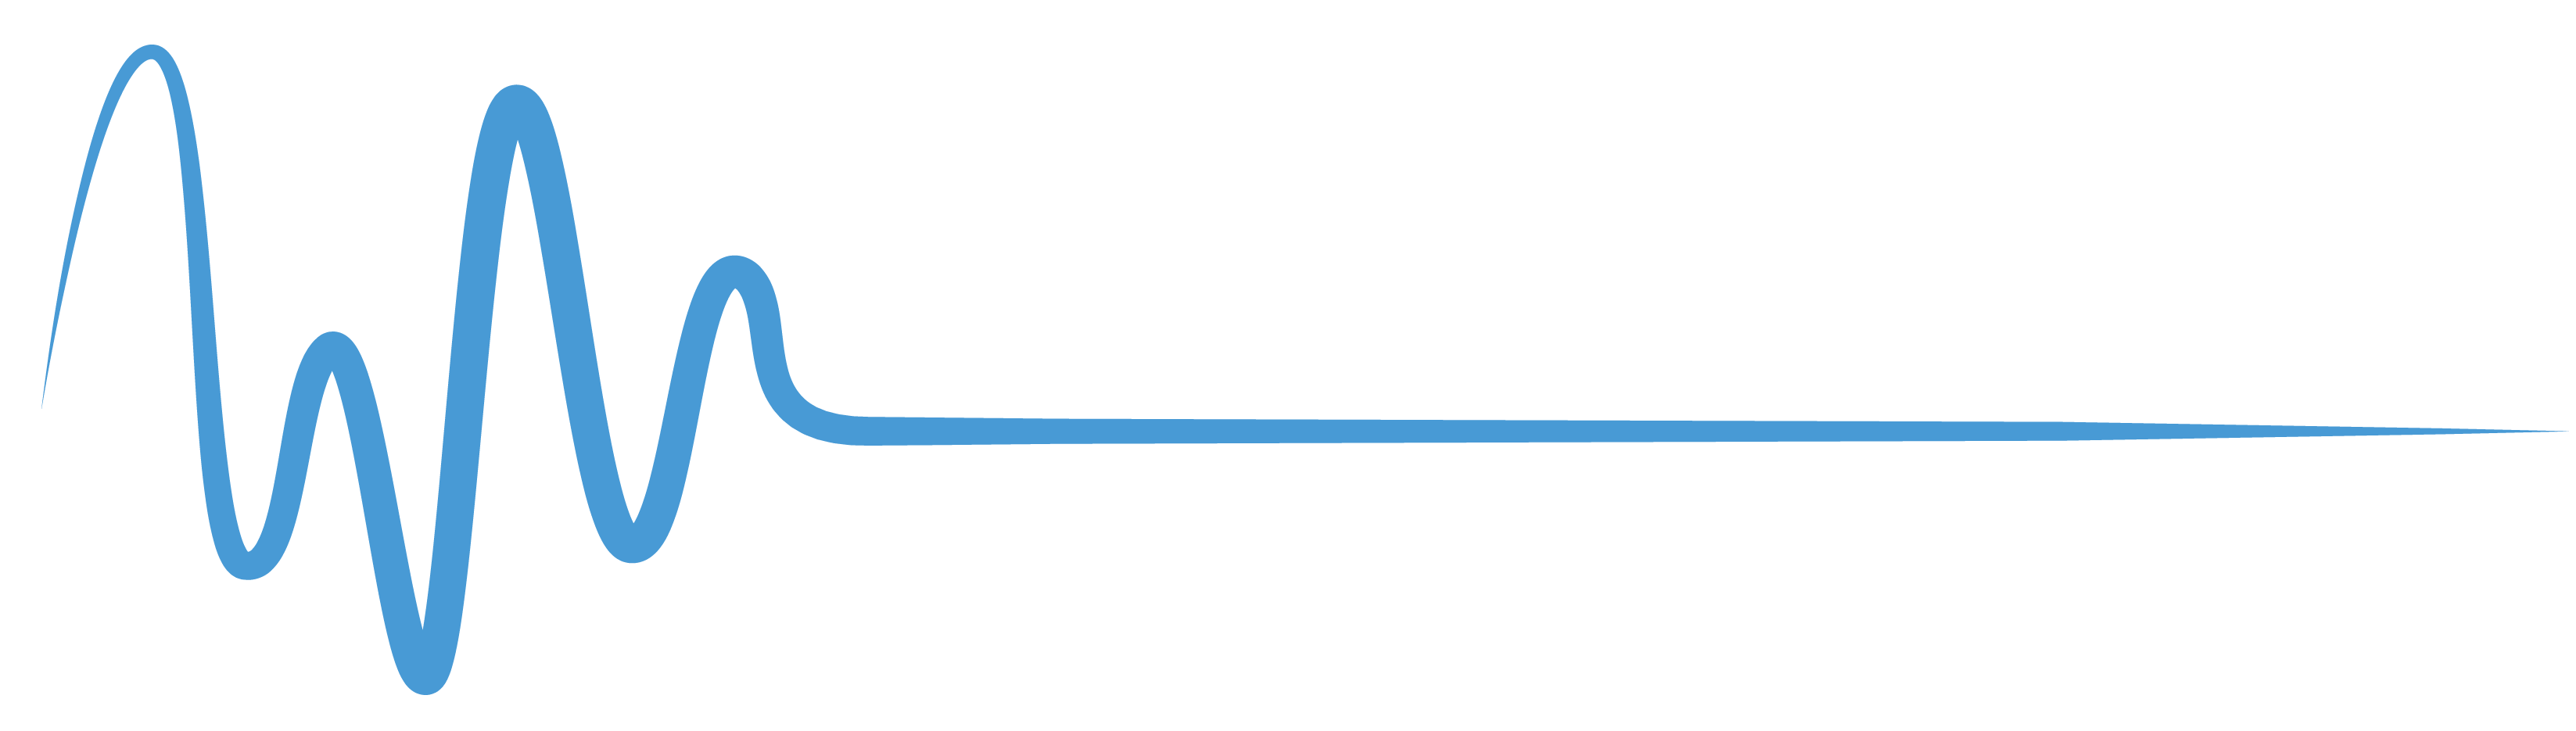 Waveform Yachts